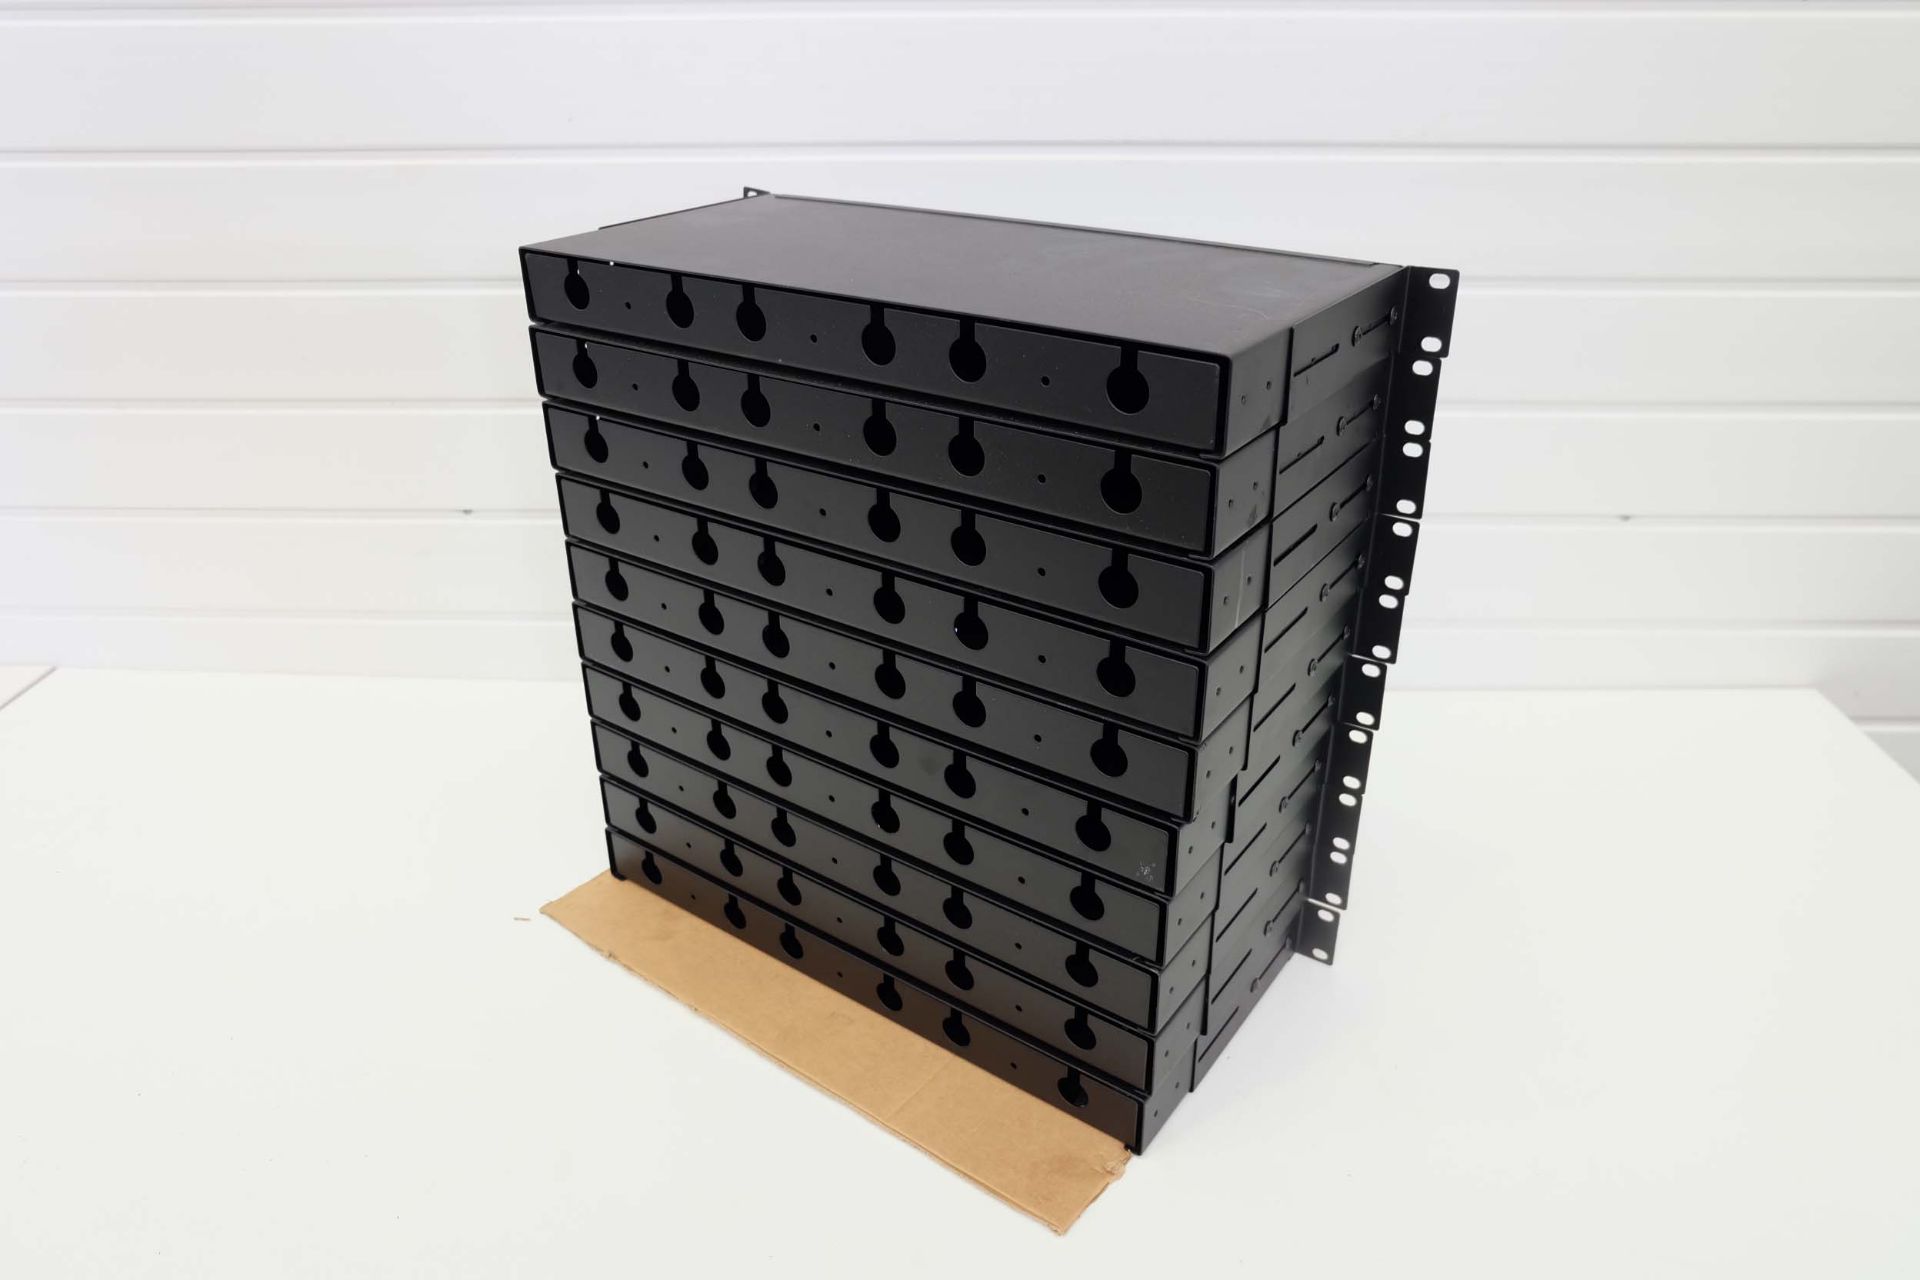 10 x Fibre Optic Cassette Patch Panels. Rack Mountable 1U 19". Port, Duplex LC MPO MTP Fibre Optics. - Image 4 of 4